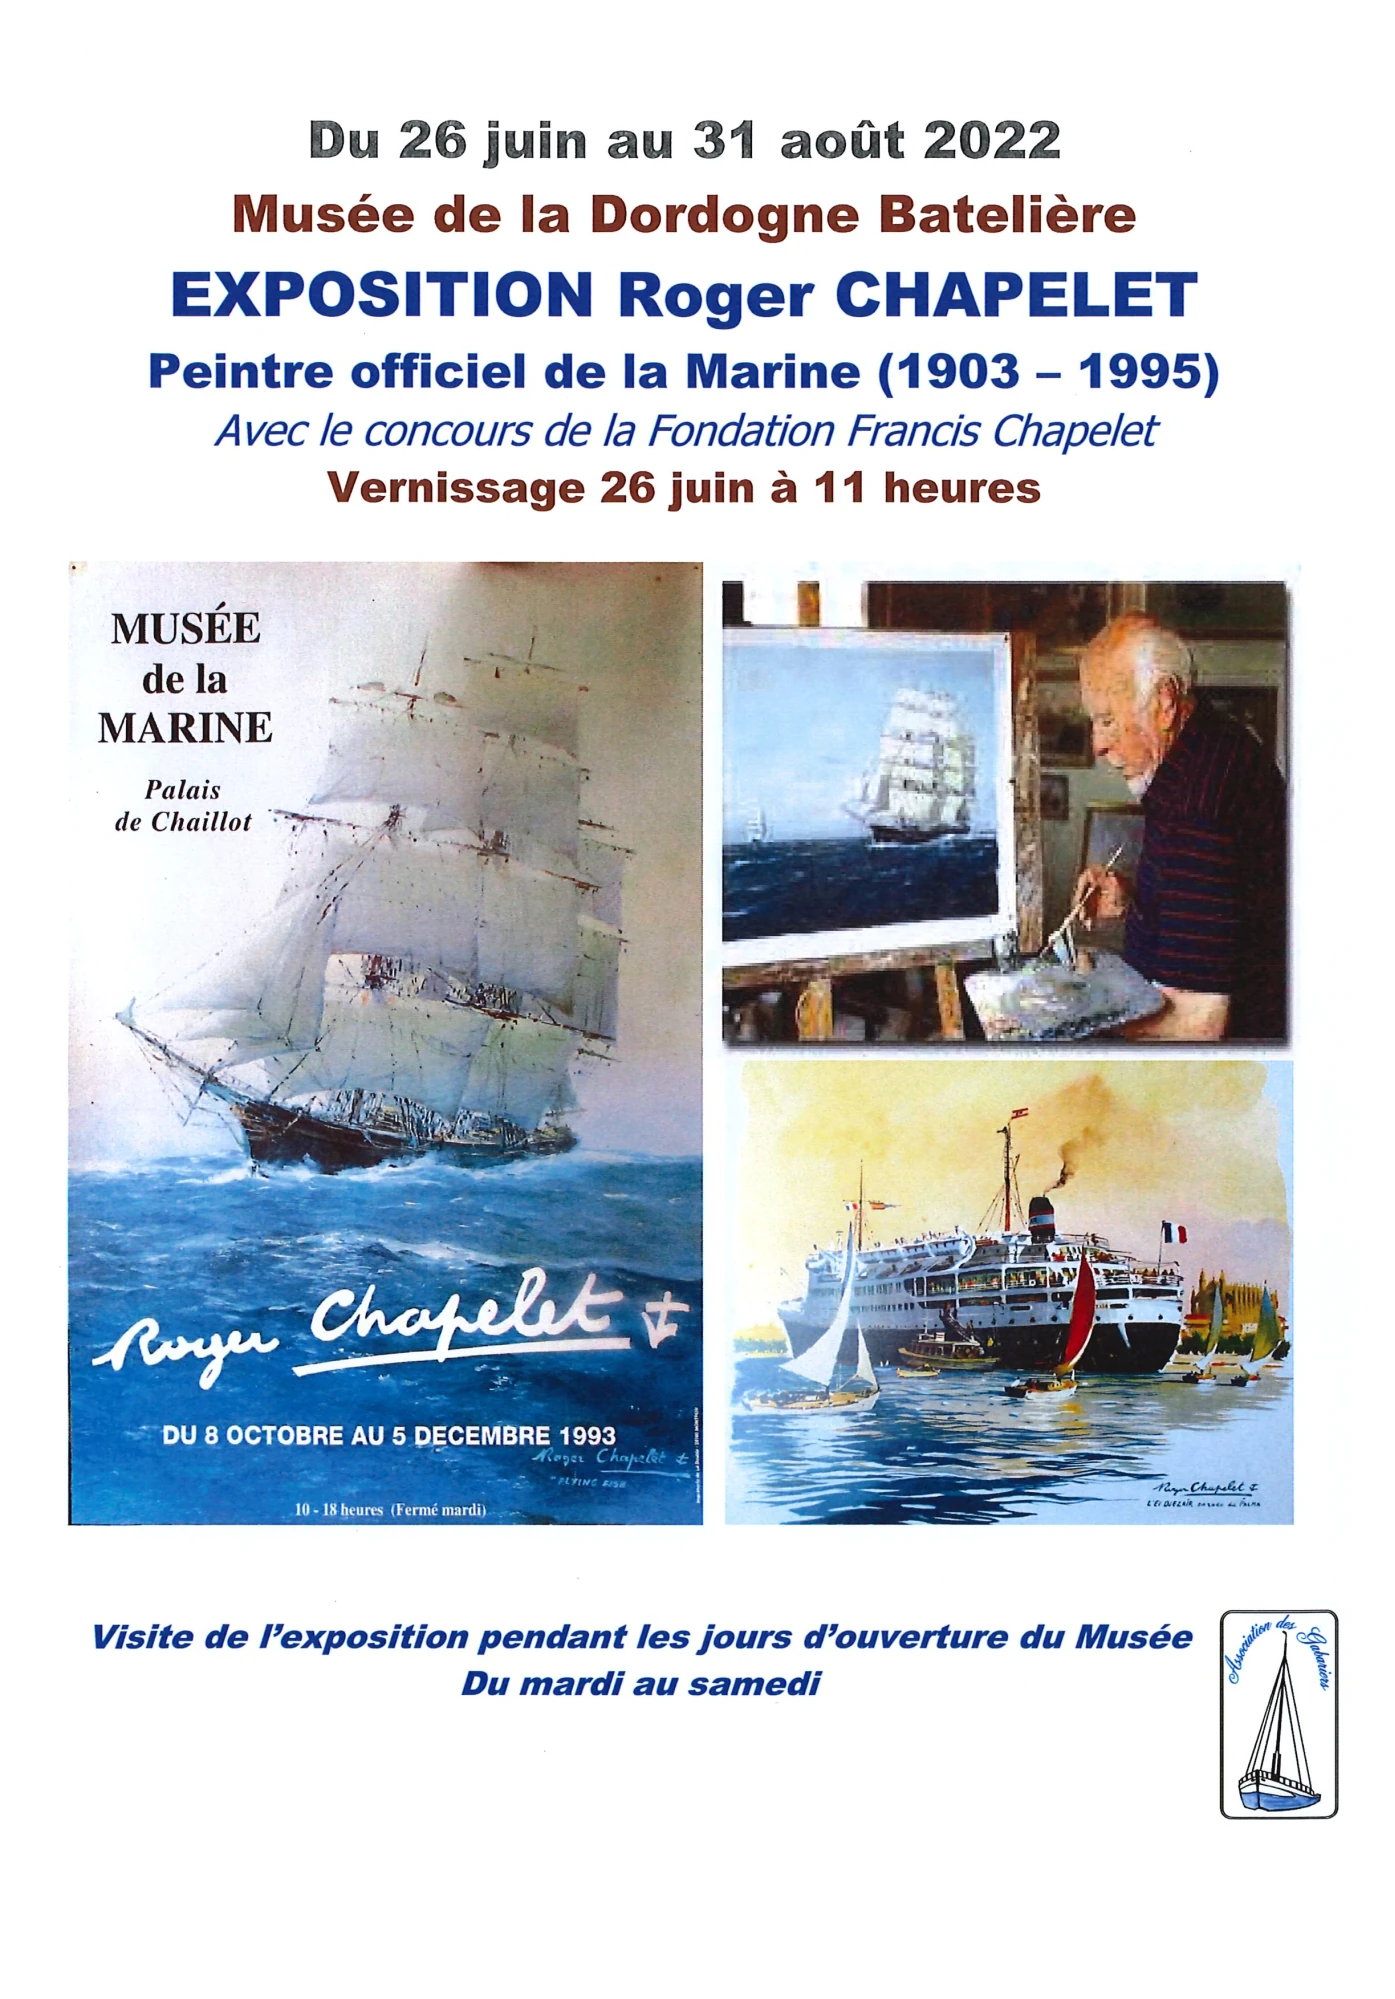 EXPOSITION Roger CHAPELET, Musée de la Dordogne Batelière, du 26 juin au 31 août 2022